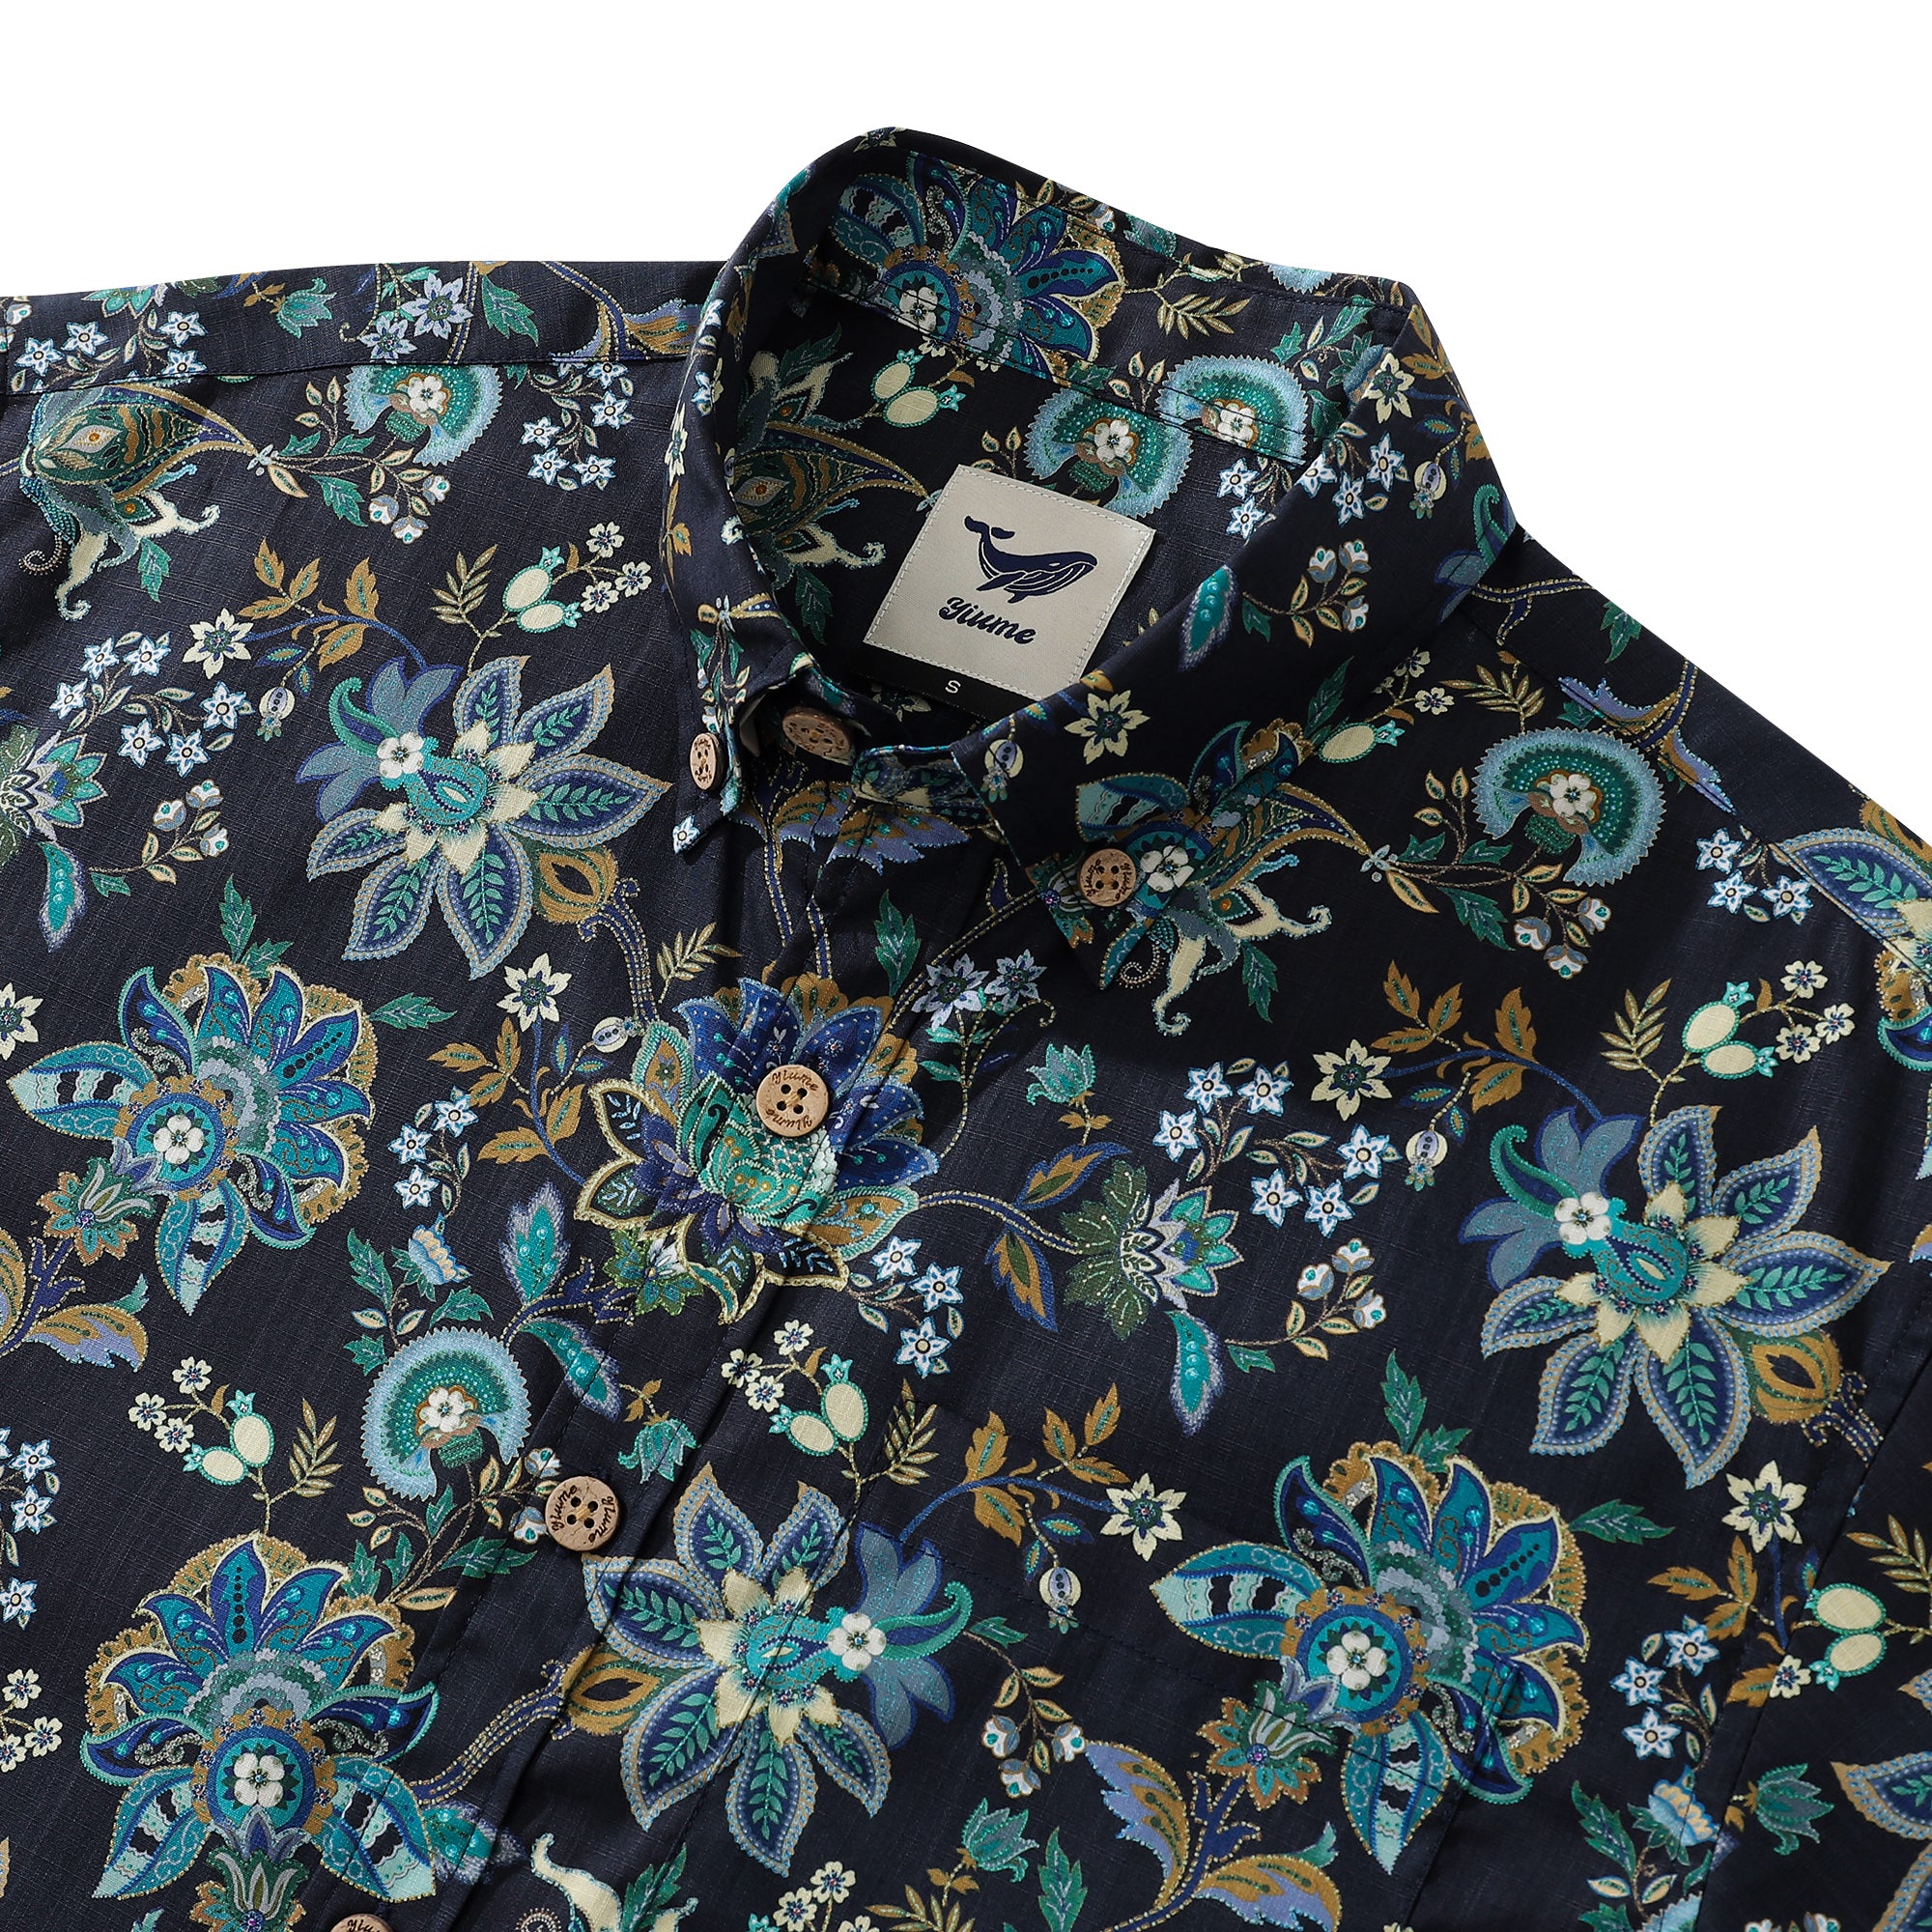 Chemise hawaïenne pour hommes noir fantaisie fleurs imprimé manches courtes coton boutonné